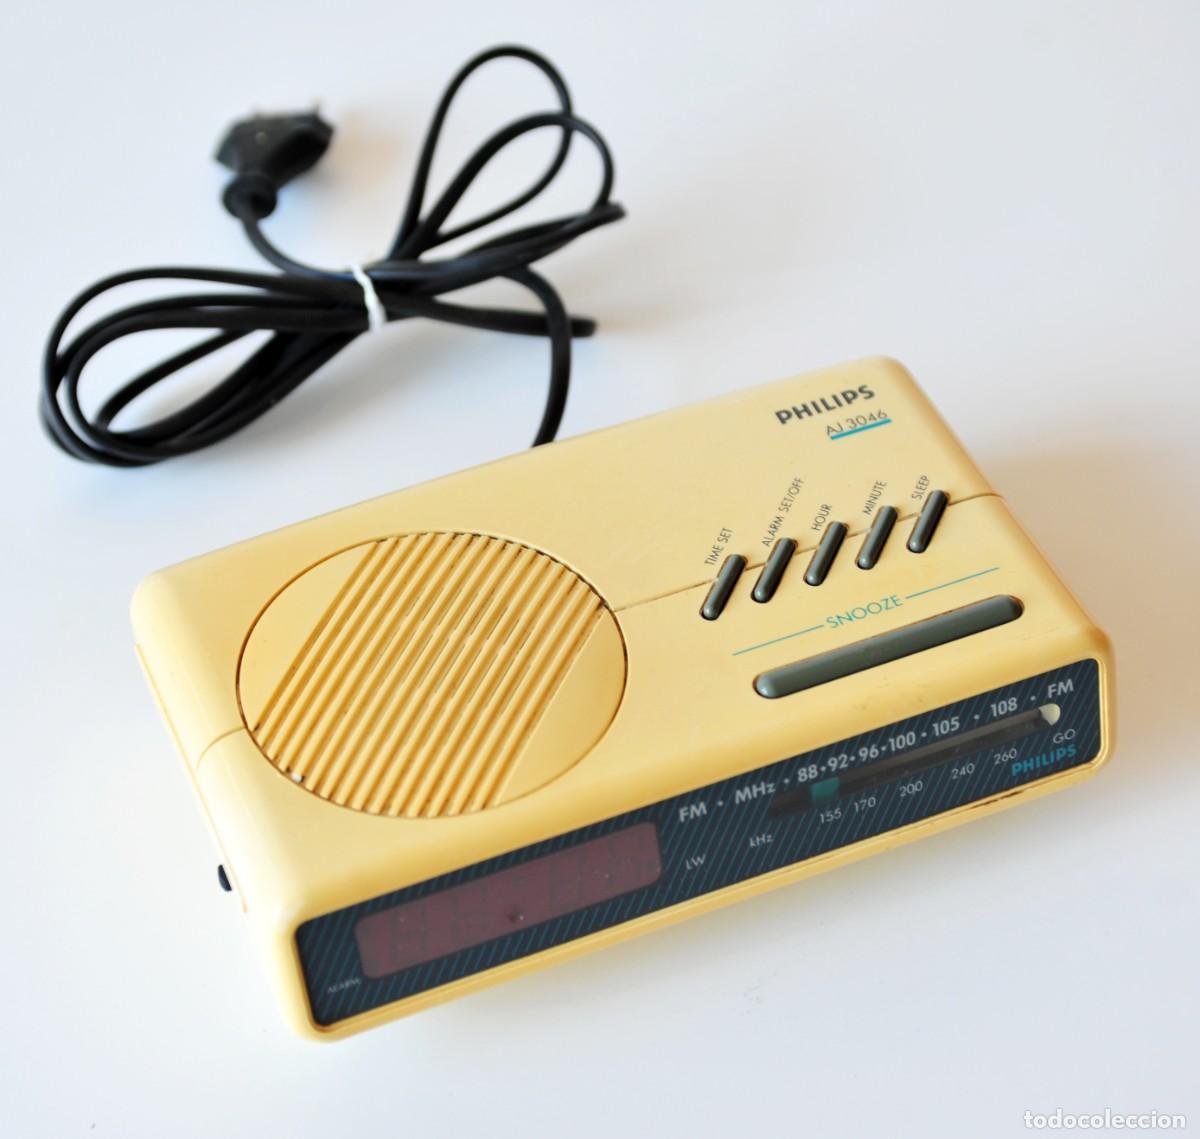 Despertador Philips antiguo años 80 -  España